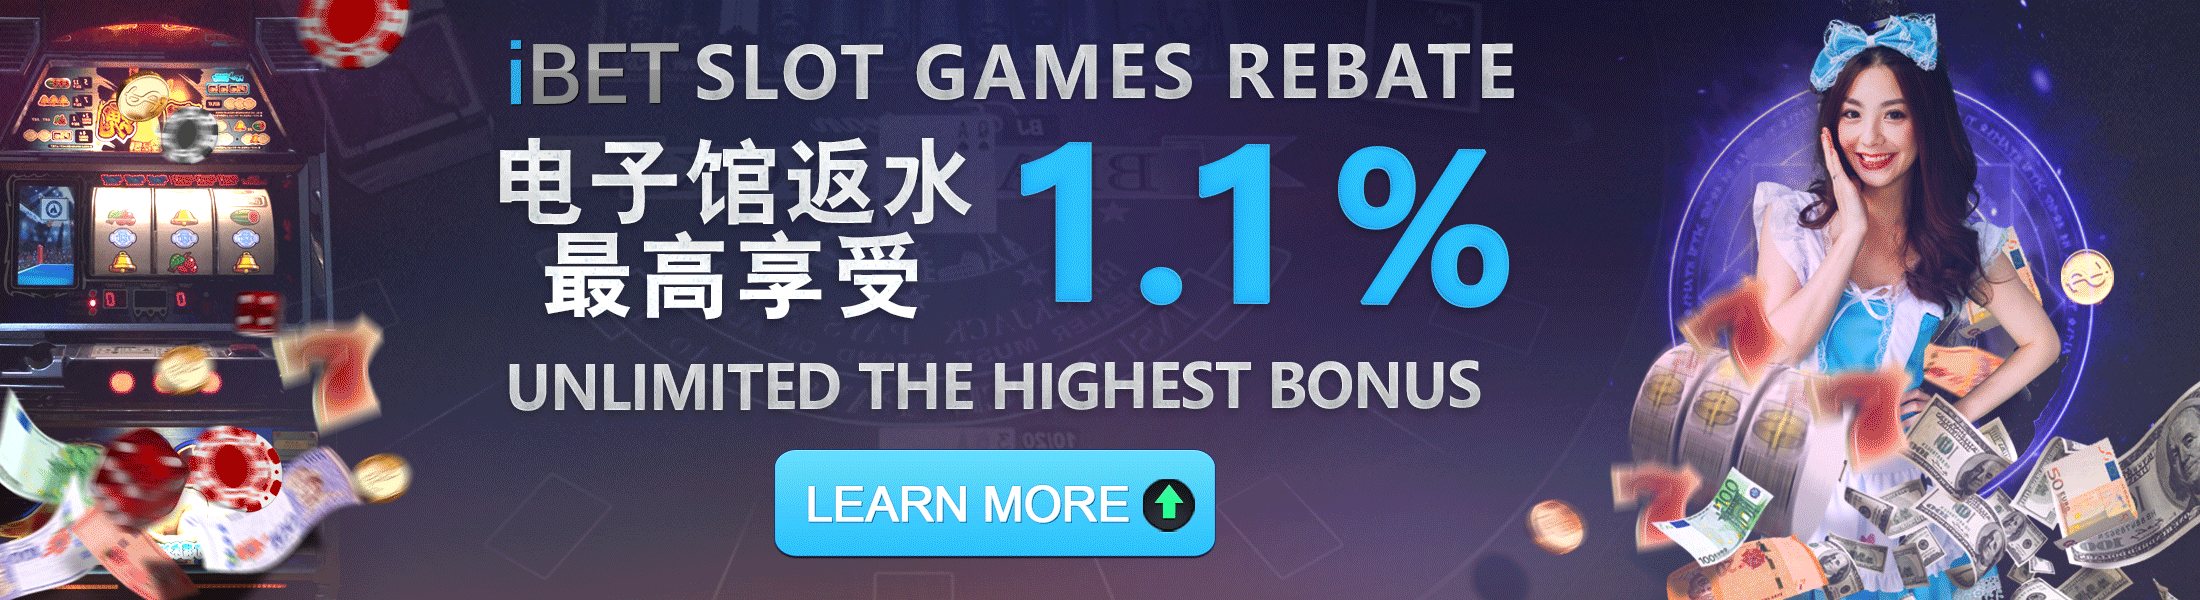 iBET Casino Slot Games Rebate 1%+0.1%